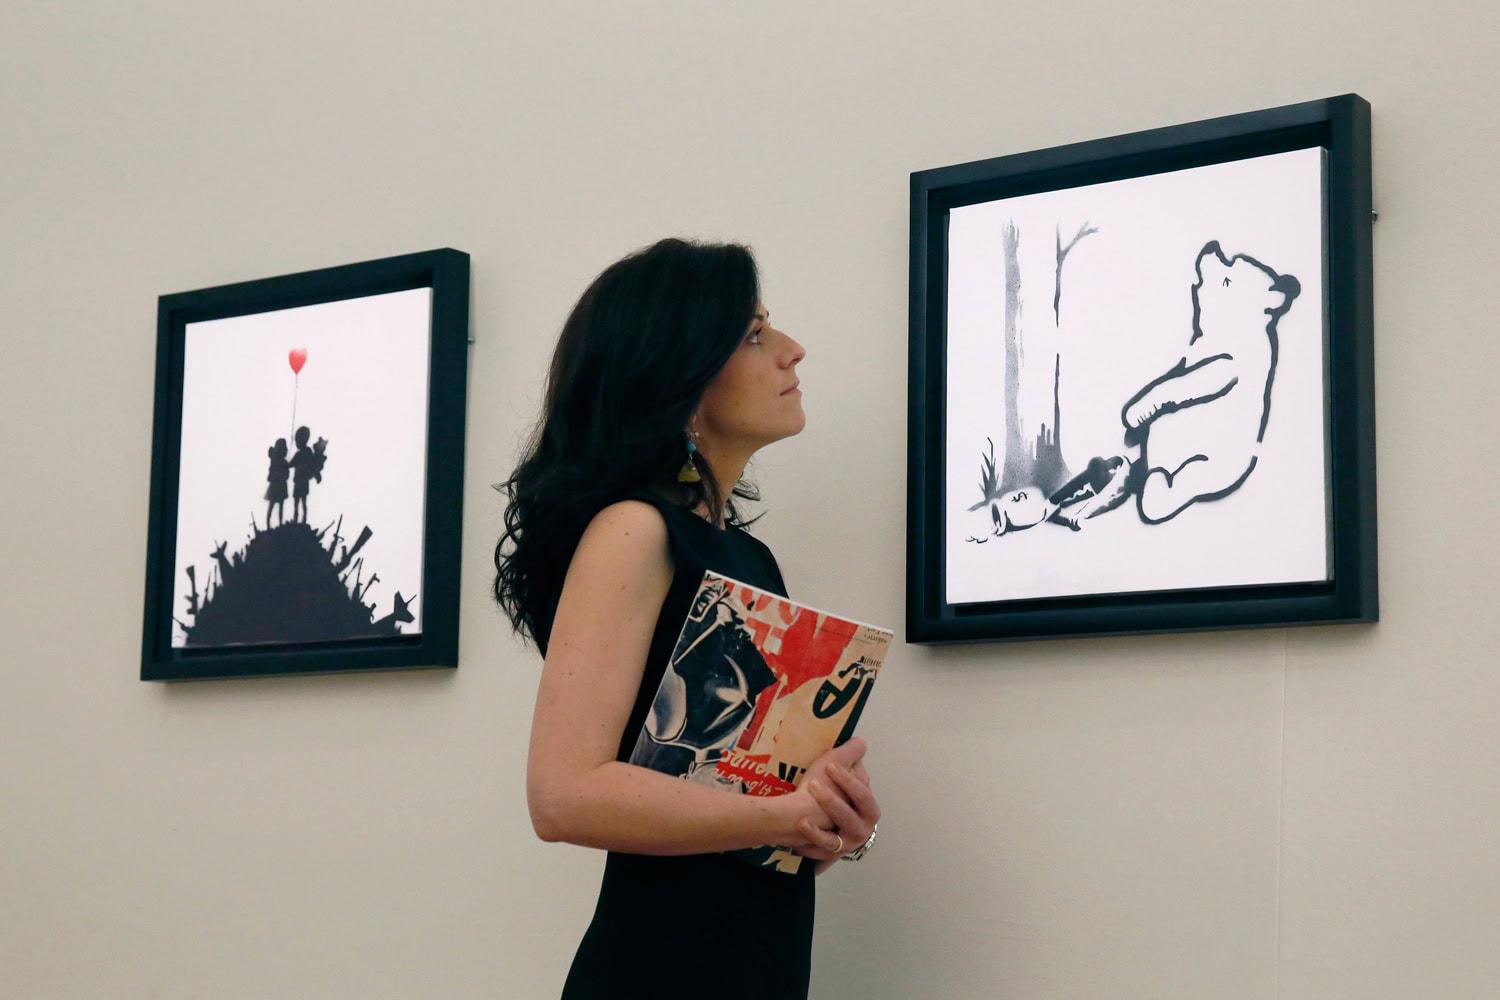 Subastan por 157.000 euros dos cuadros que Banksy vendió por 44 euros.